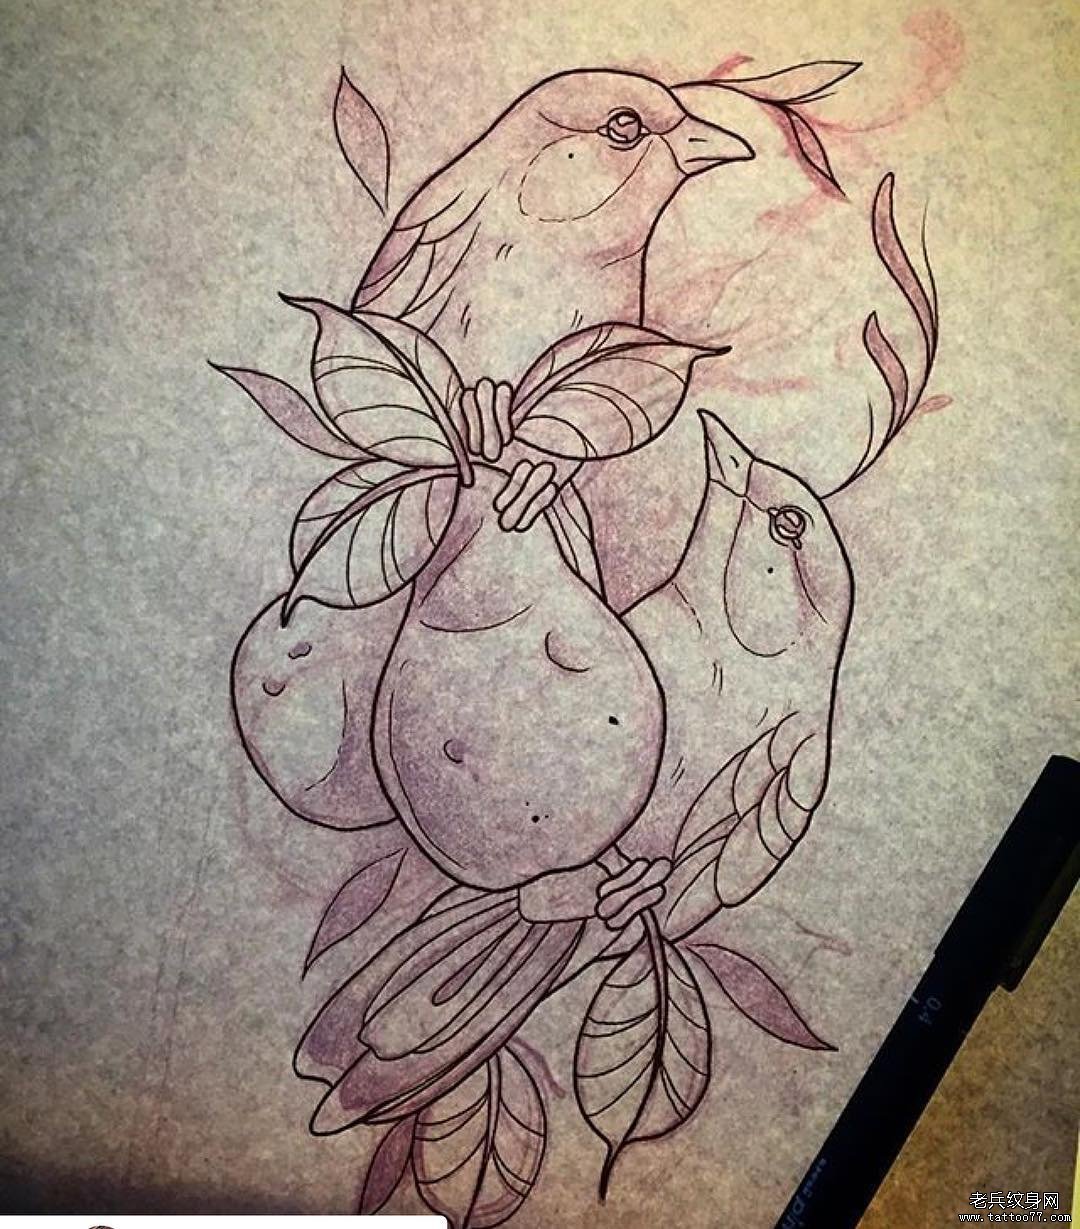 欧美小鸟水果梨纹身图案手稿